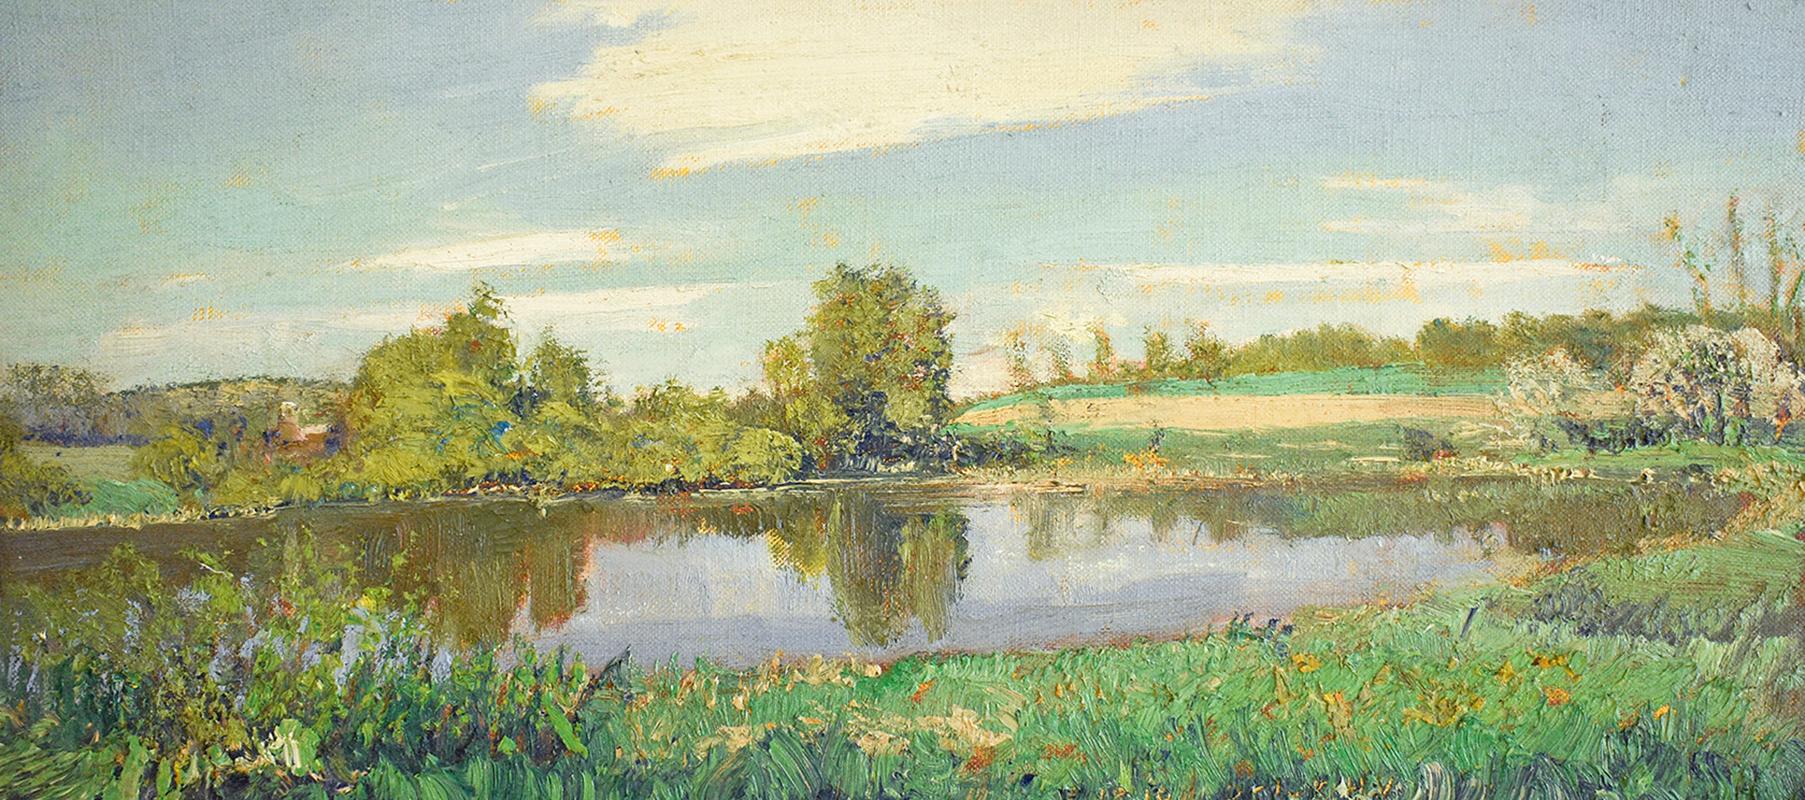 Harry Orlyk Landscape Painting – #5682 McKernon Road: Impressionistisches Sommerlandschaftsgemälde En Plein Air 